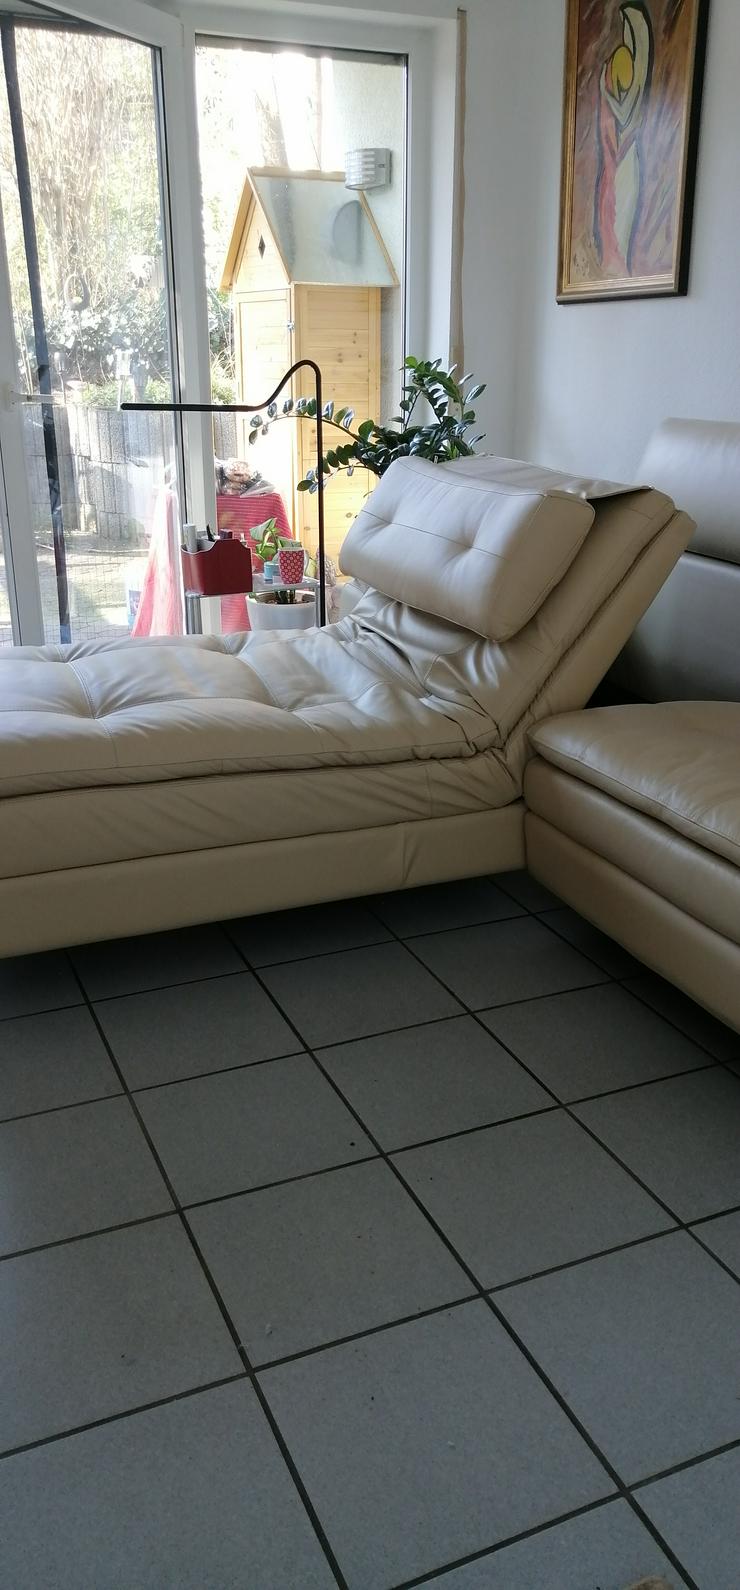 Ecksofa Leder Beige mit Funktion Relax und Liegefunktion - Sofas & Sitzmöbel - Bild 1